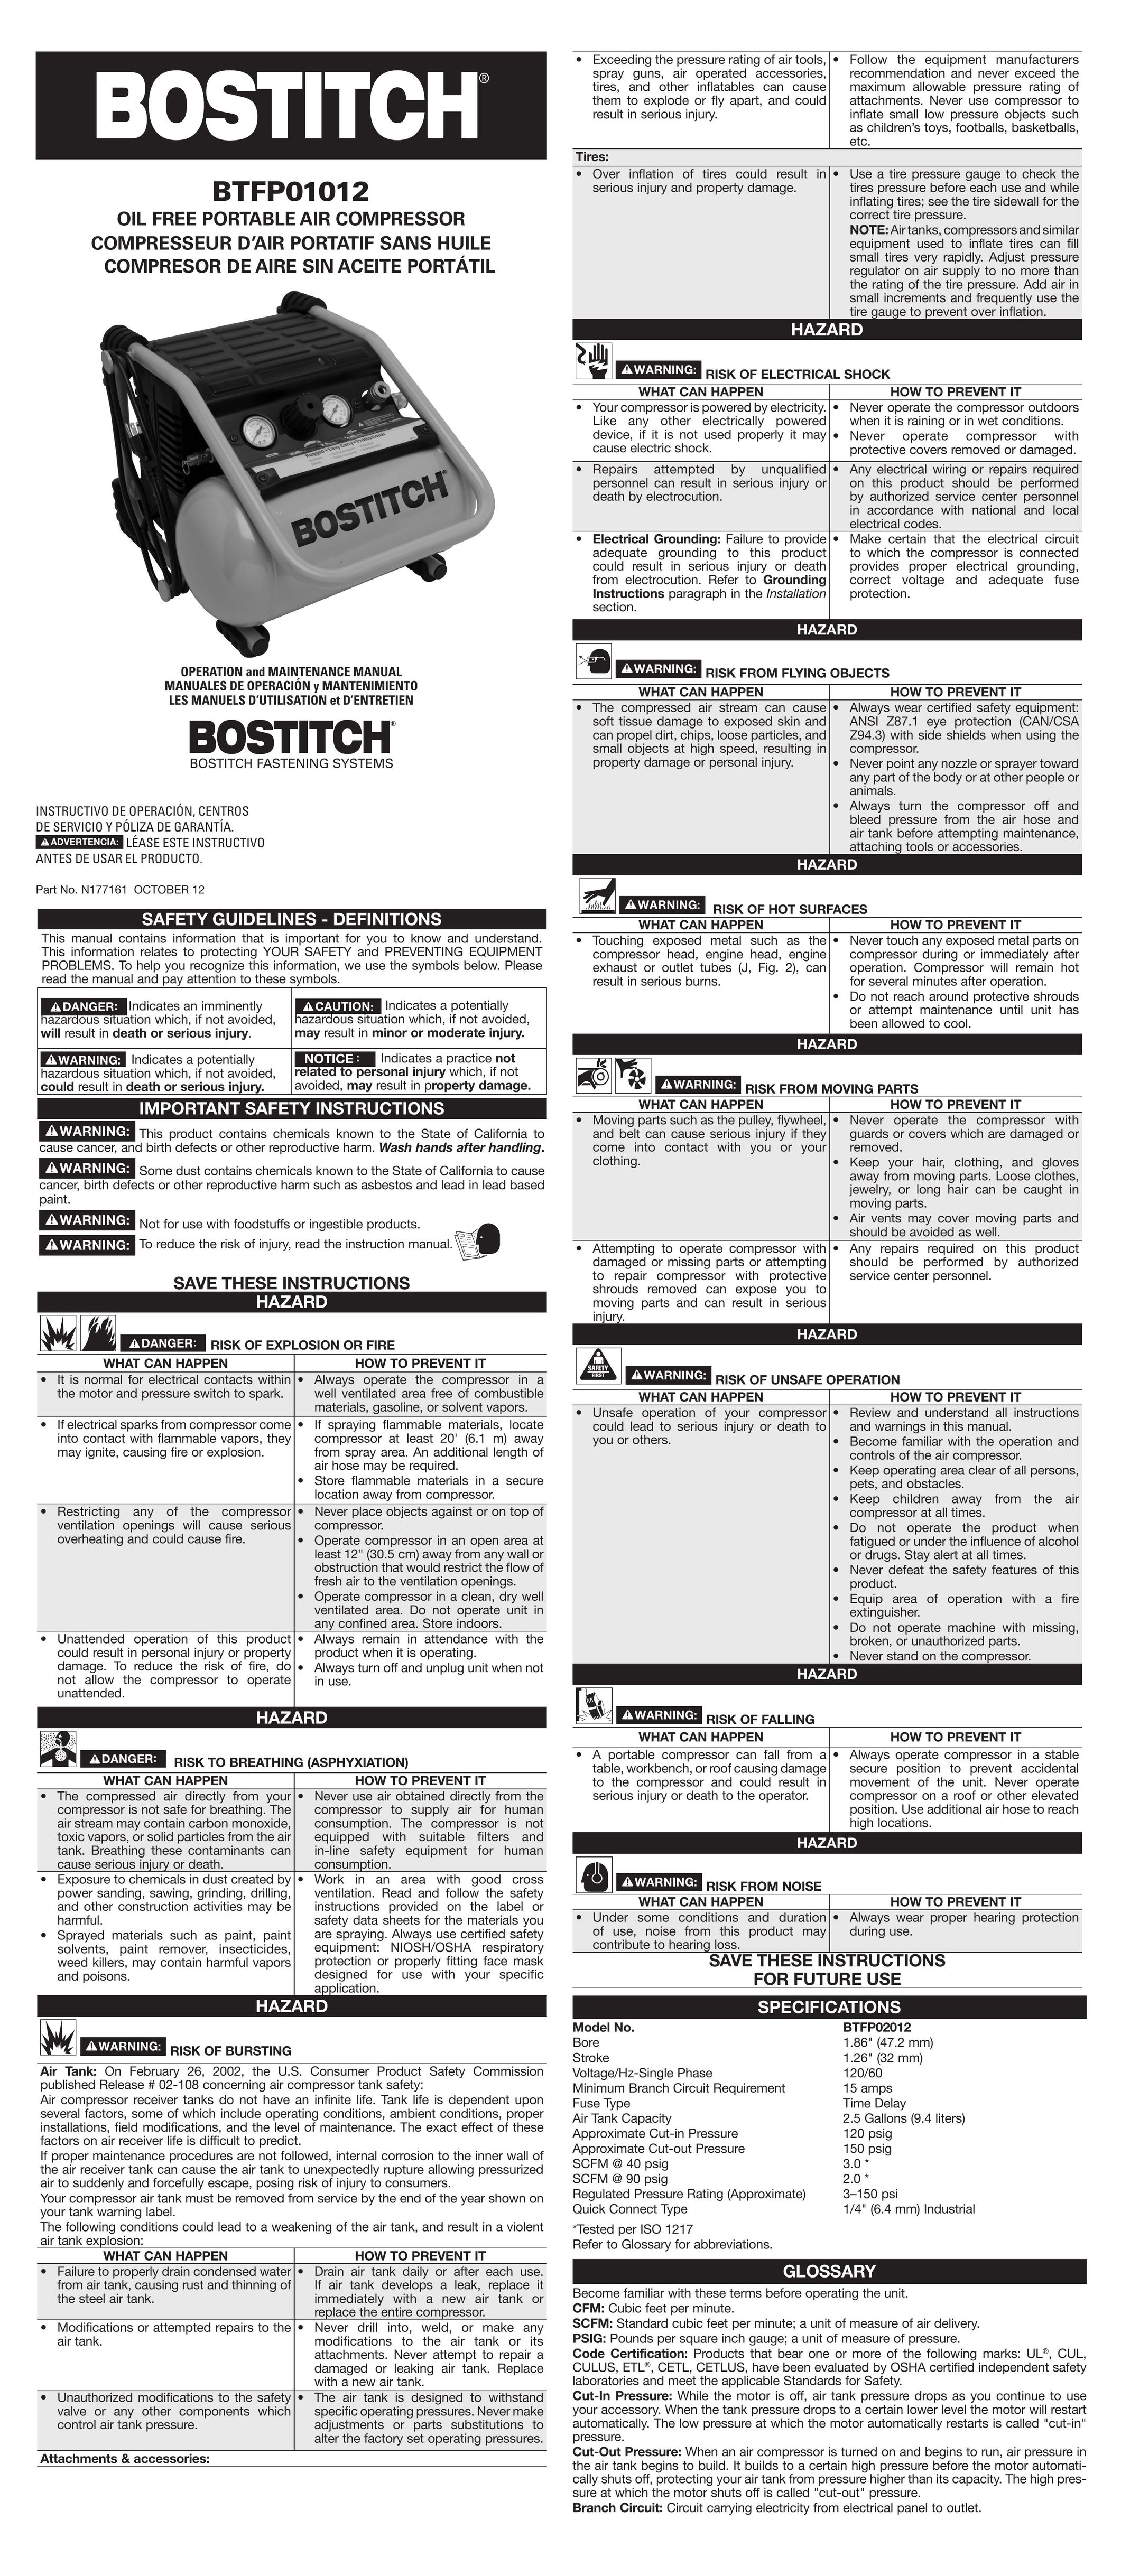 Bostitch BTFP01012 Air Compressor User Manual